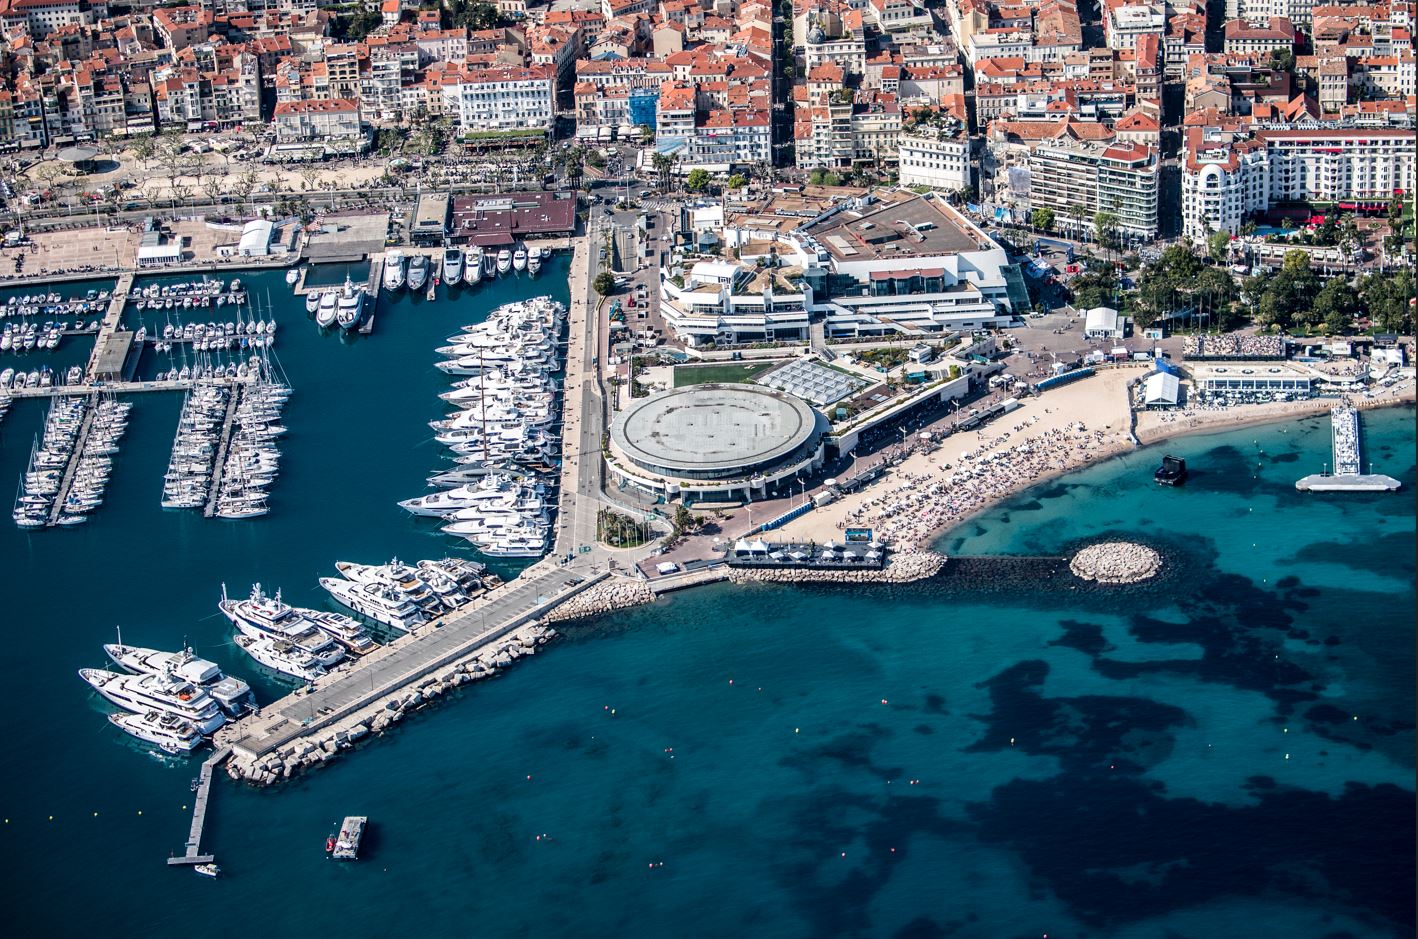 Vieux Port Cannes